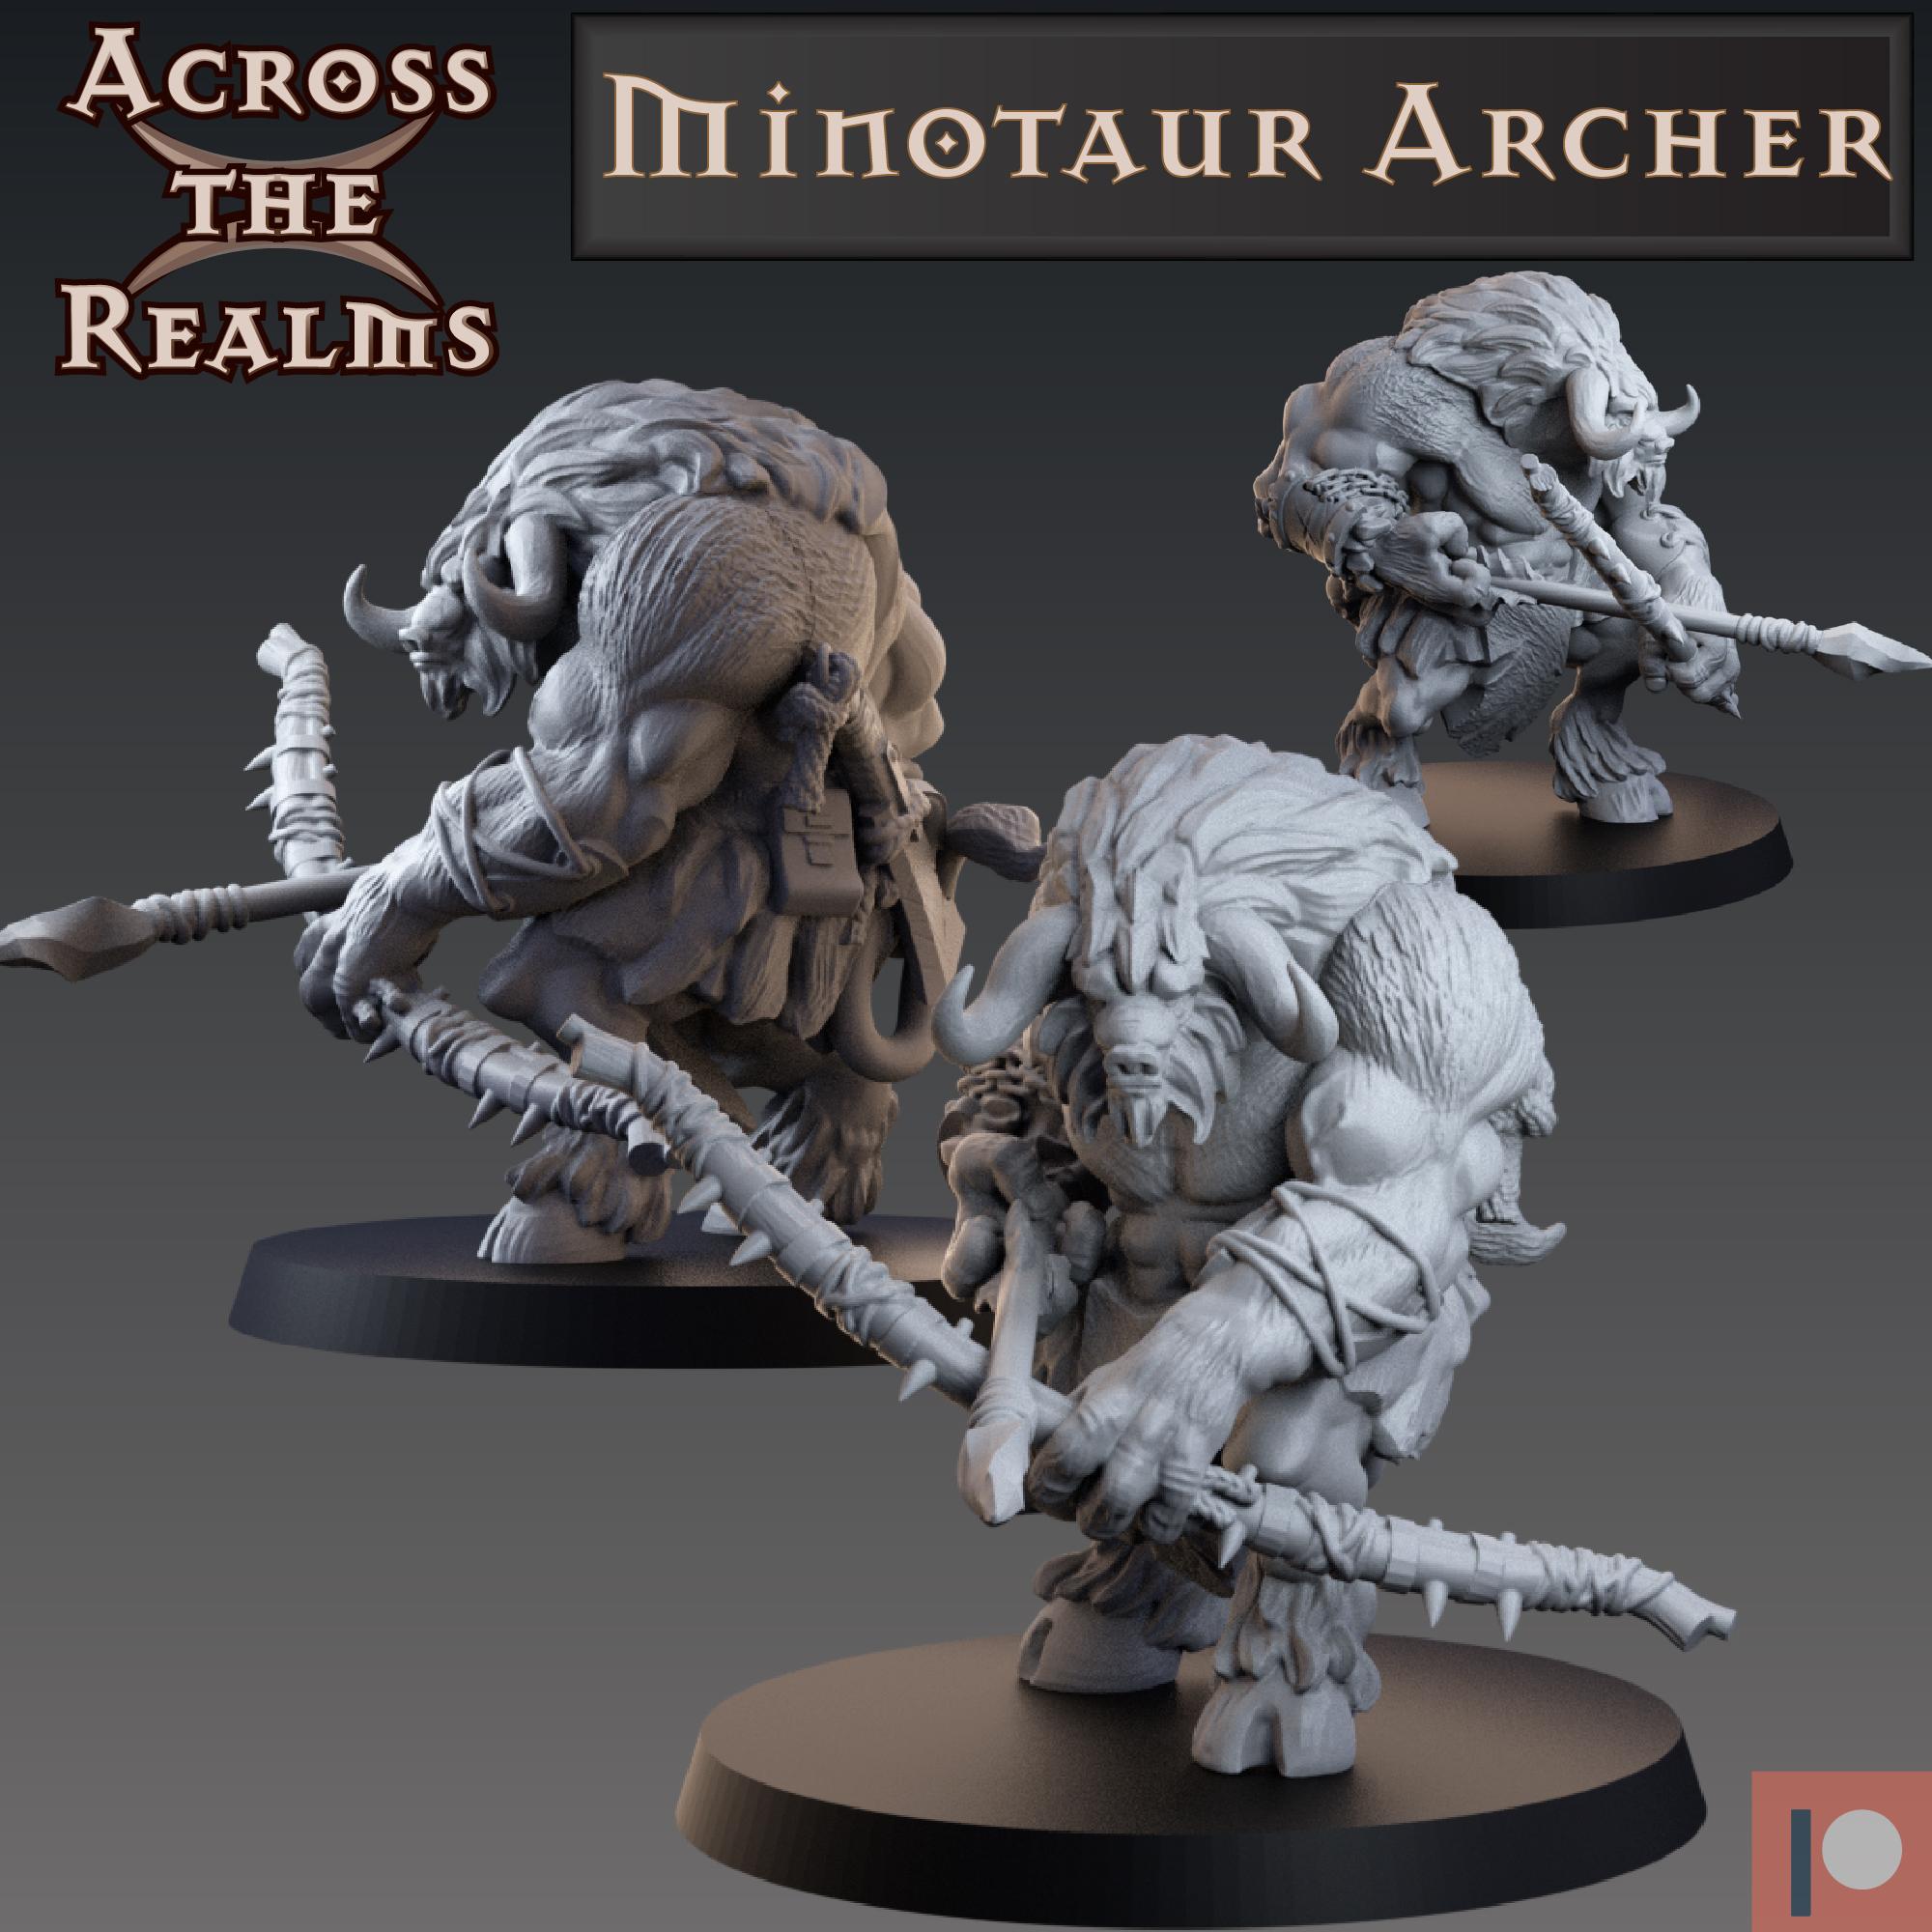 Minotaur Archer 3d model